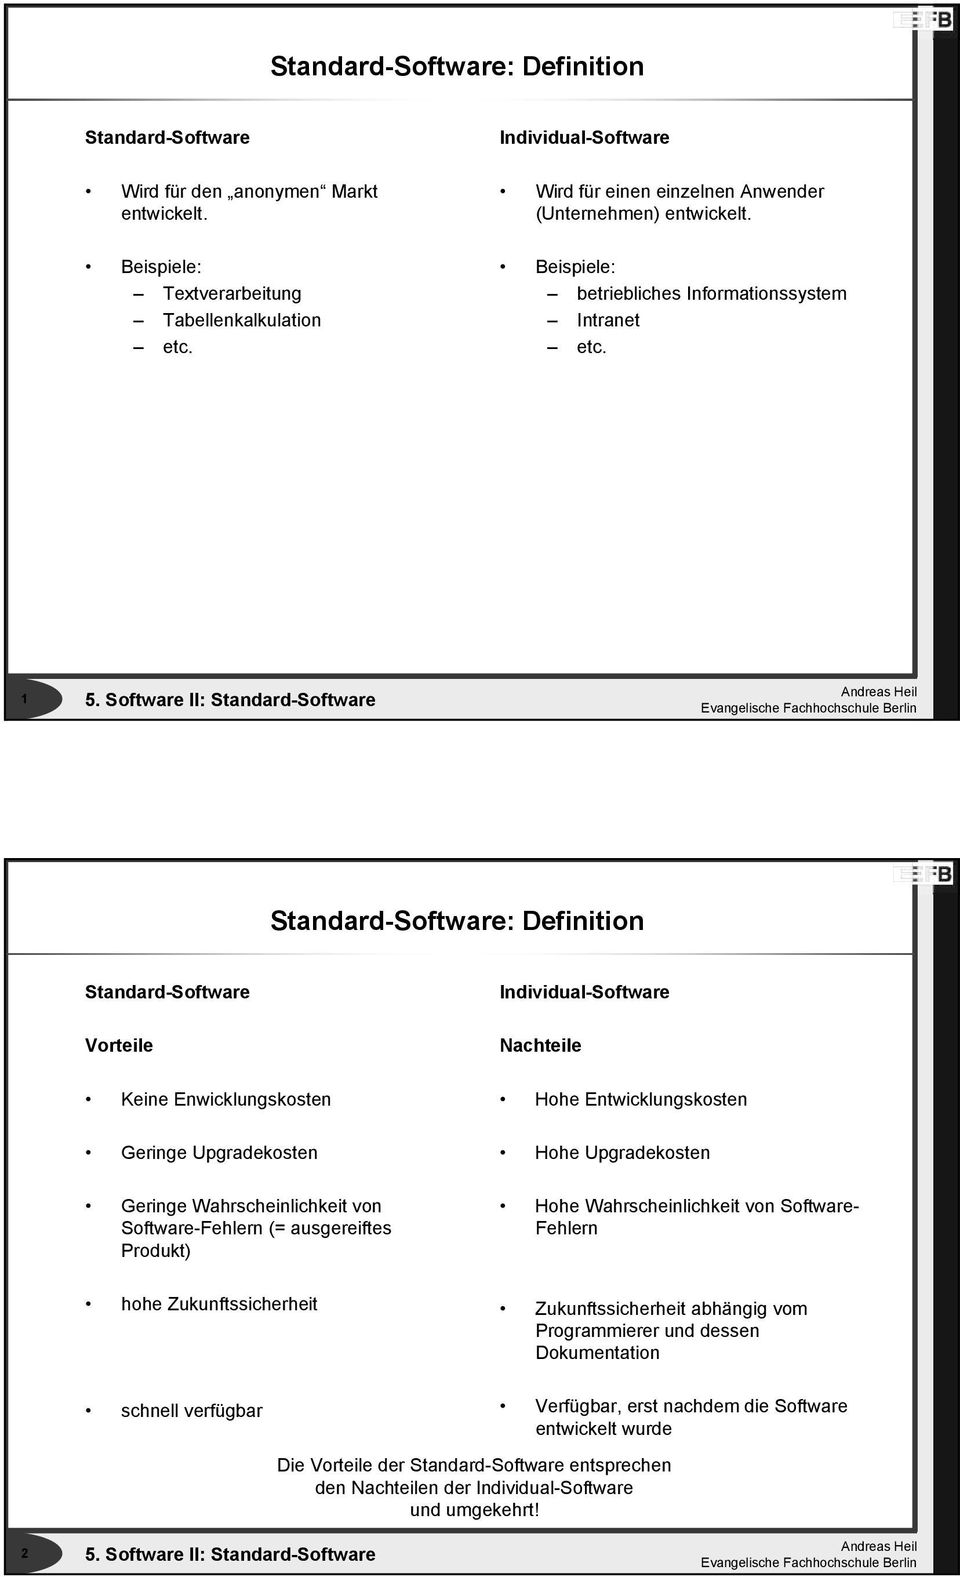 1 Standard-Software: Definition Standard-Software Vorteile Keine Enwicklungskosten Geringe Upgradekosten Geringe Wahrscheinlichkeit von Software-Fehlern (= ausgereiftes Produkt) Individual-Software